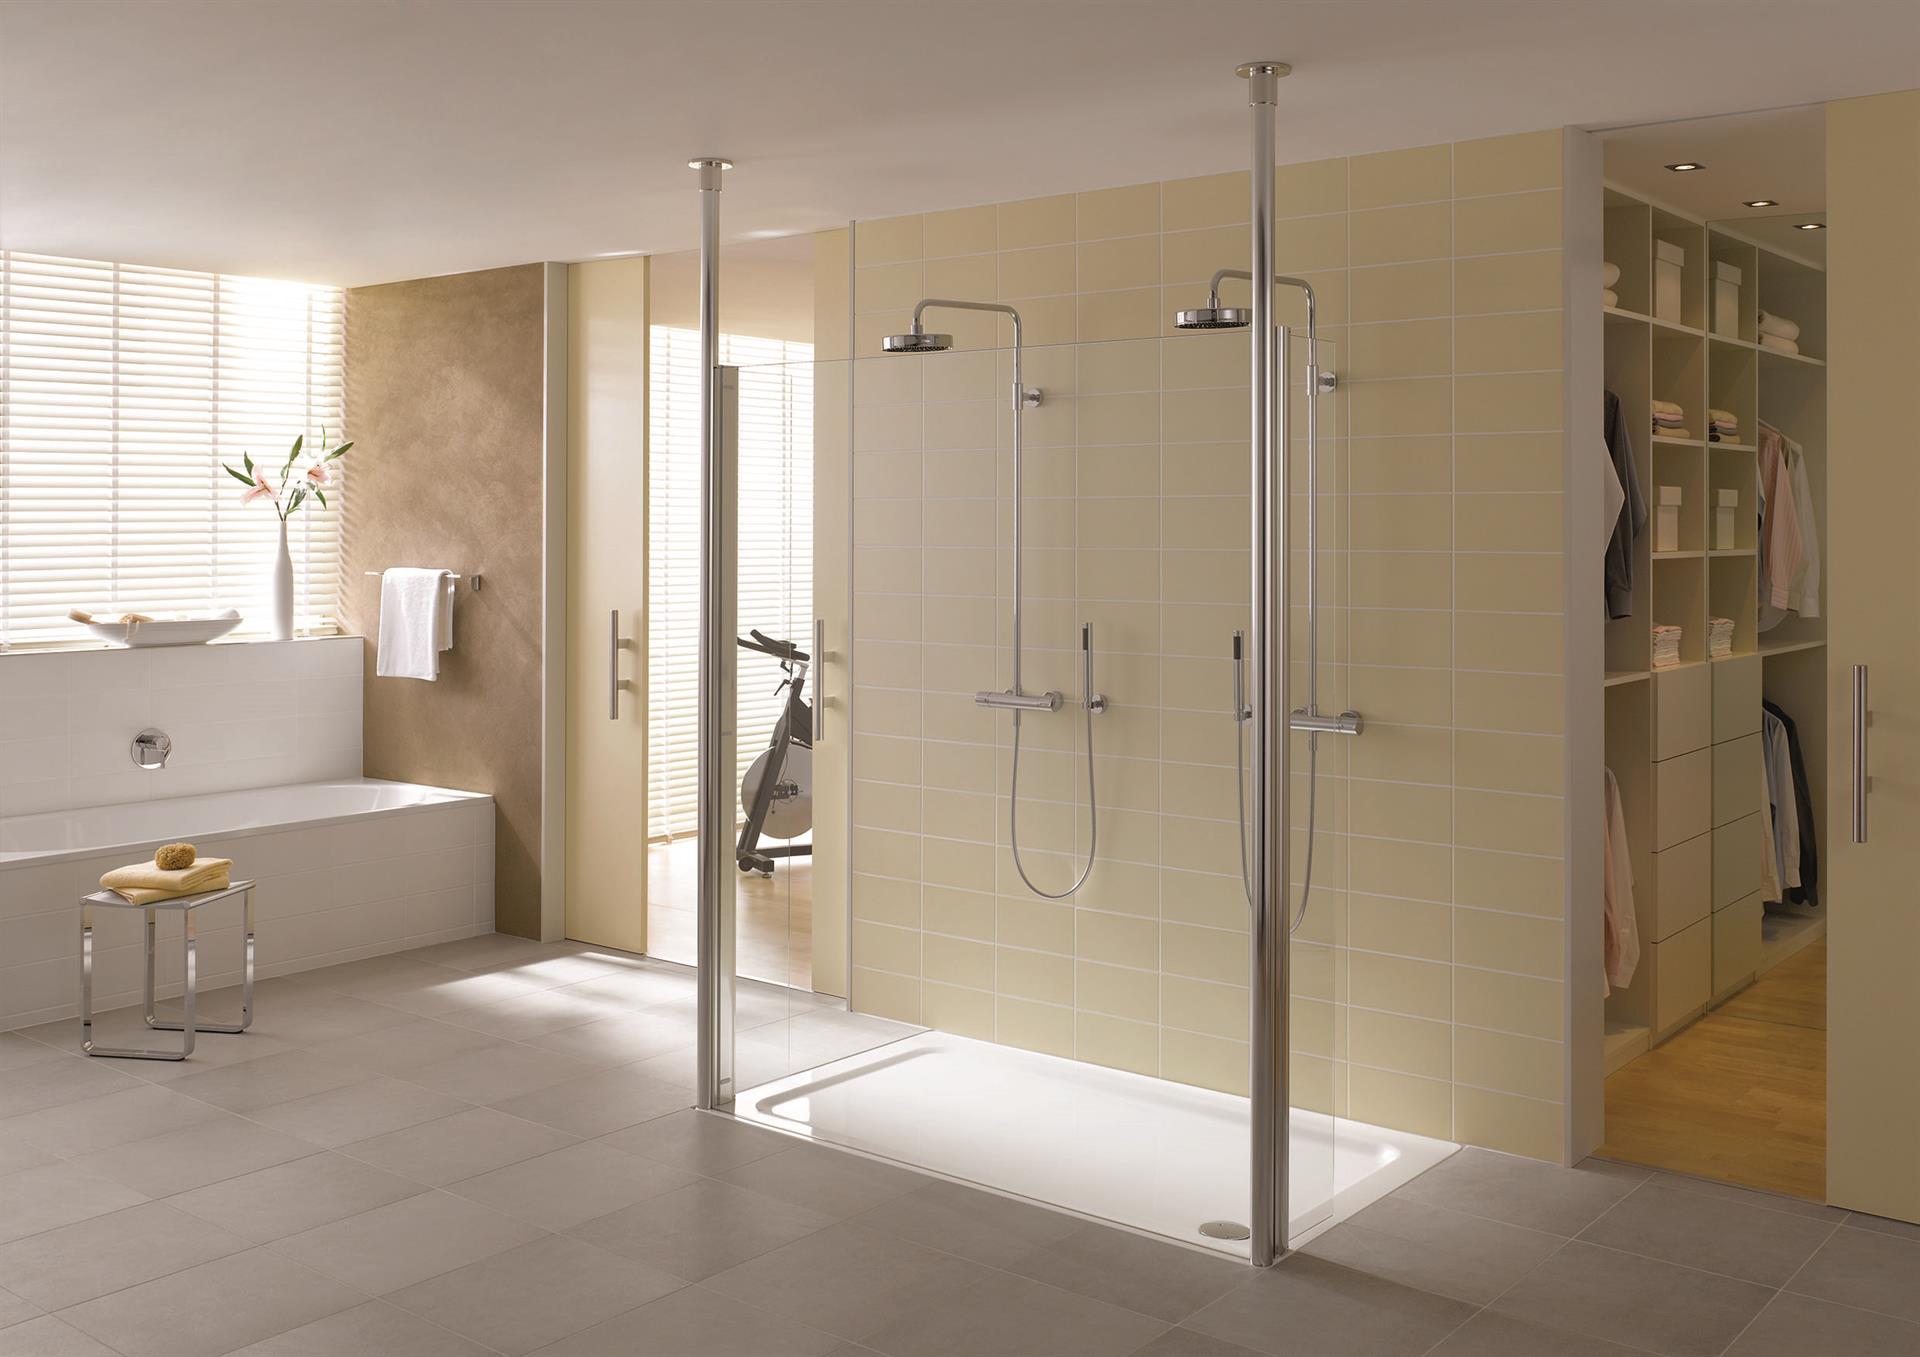 Rollstuhlgerechtes Badezimmer mit breitem Durchgang und übergangsloser Dusche